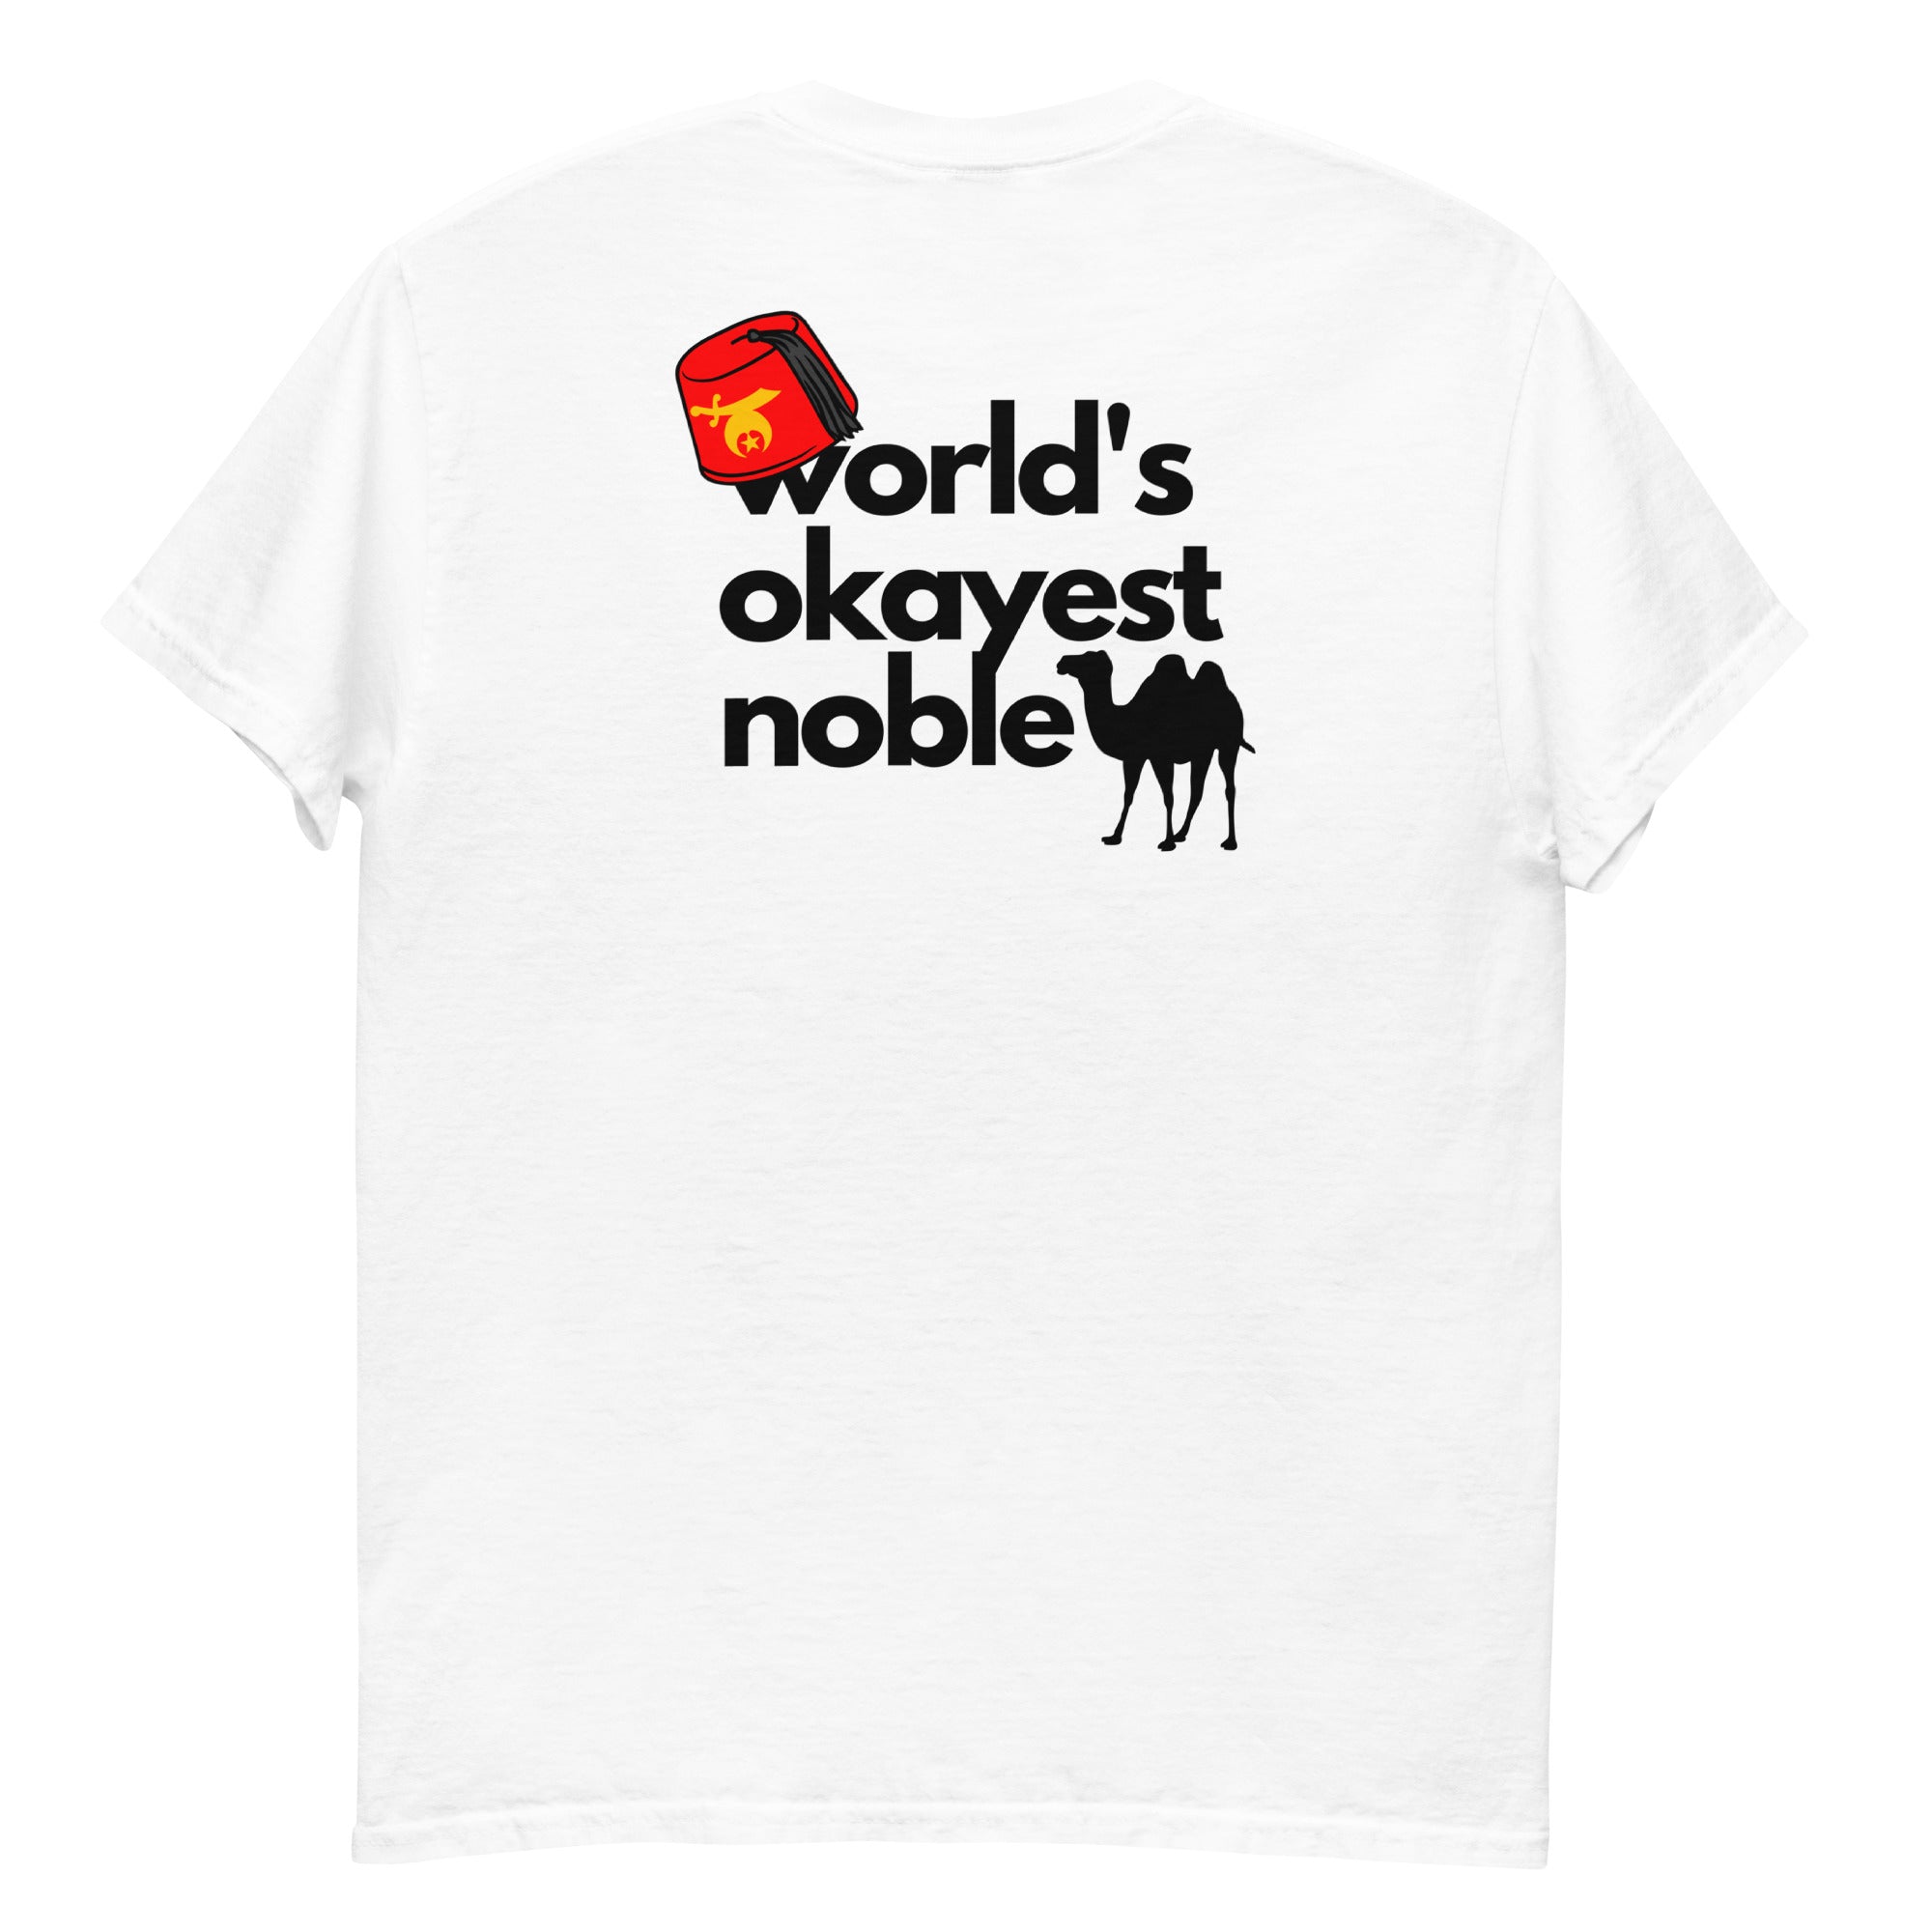 World's Okayest Noble shrine t-shirt (light color)